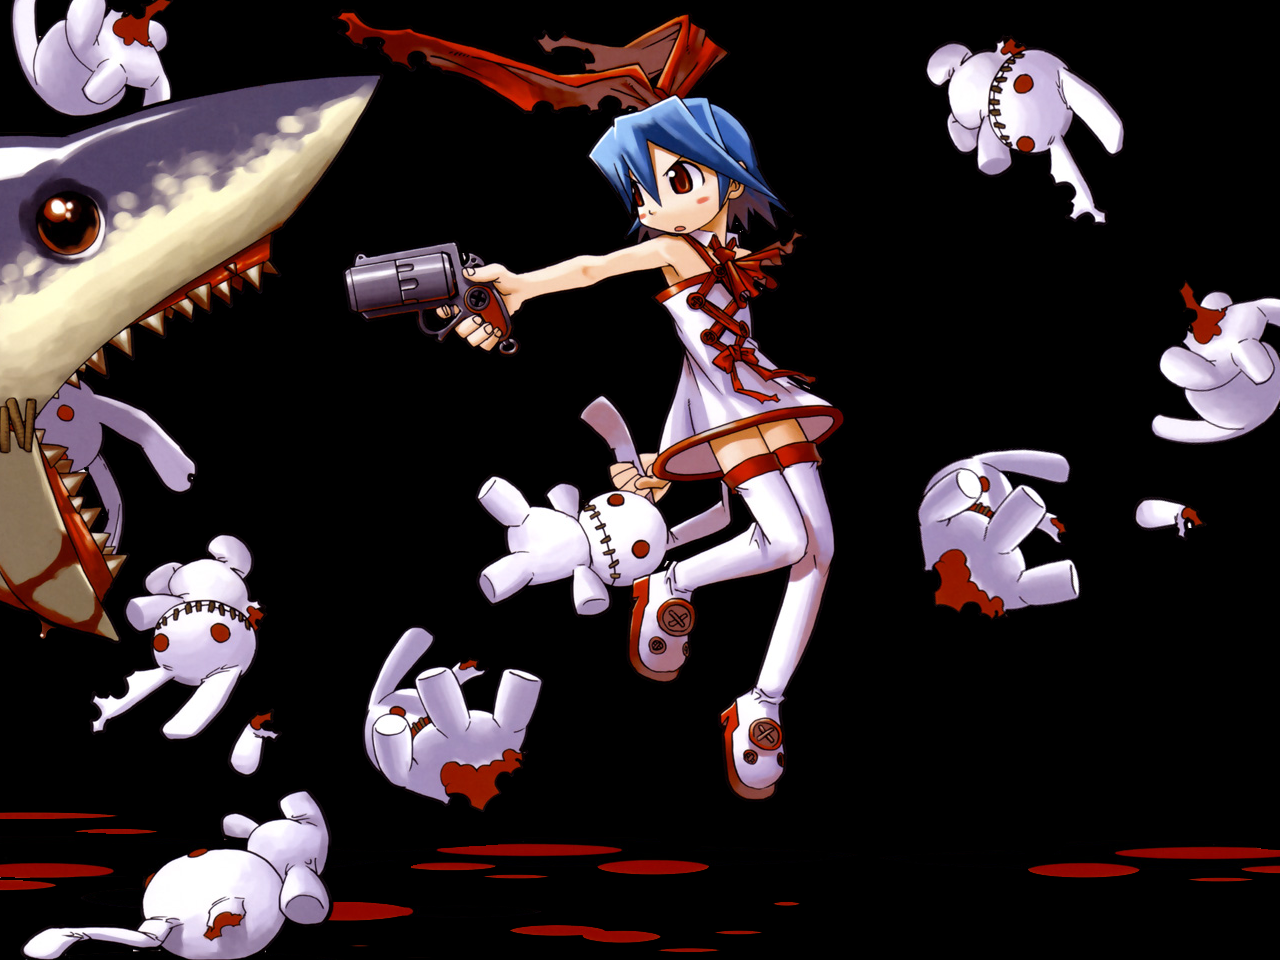 3d обои девушка с синими волосами и красным бантом целится из револьвера в акулу,которая жрёт её игрушечных зайчиков  игрушки # 41440